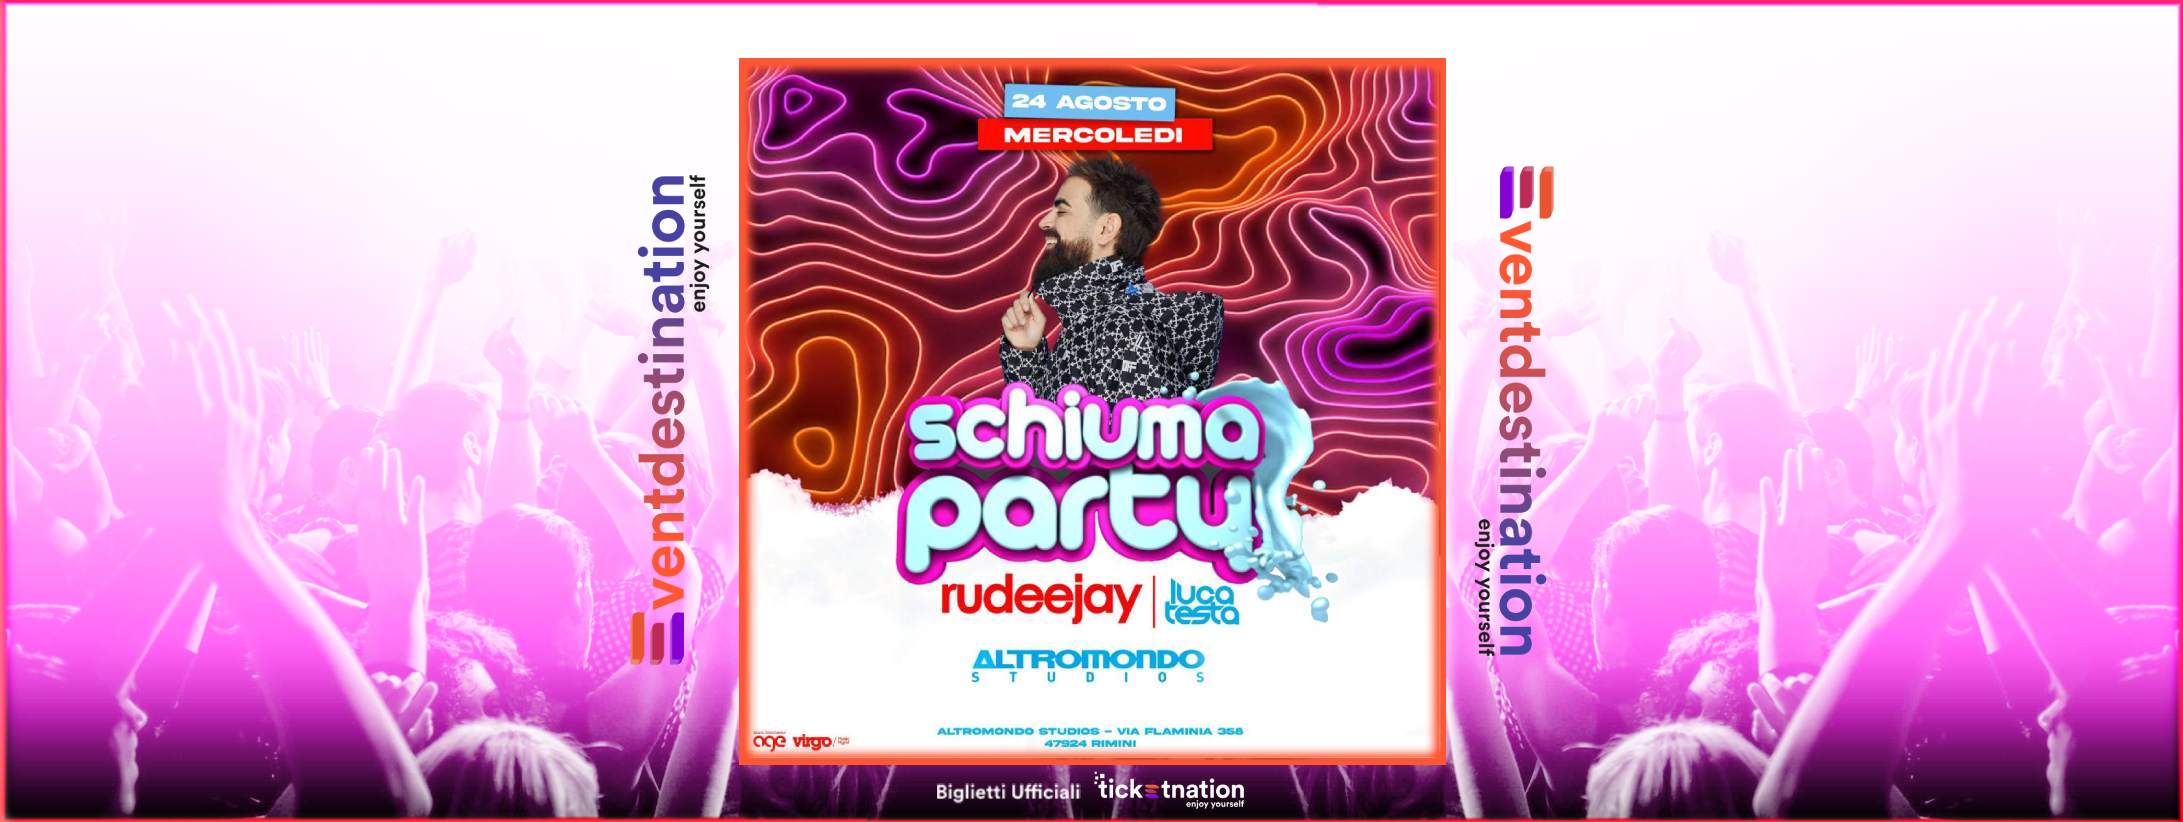 Schiuma Party @ ams 24 ago 2022